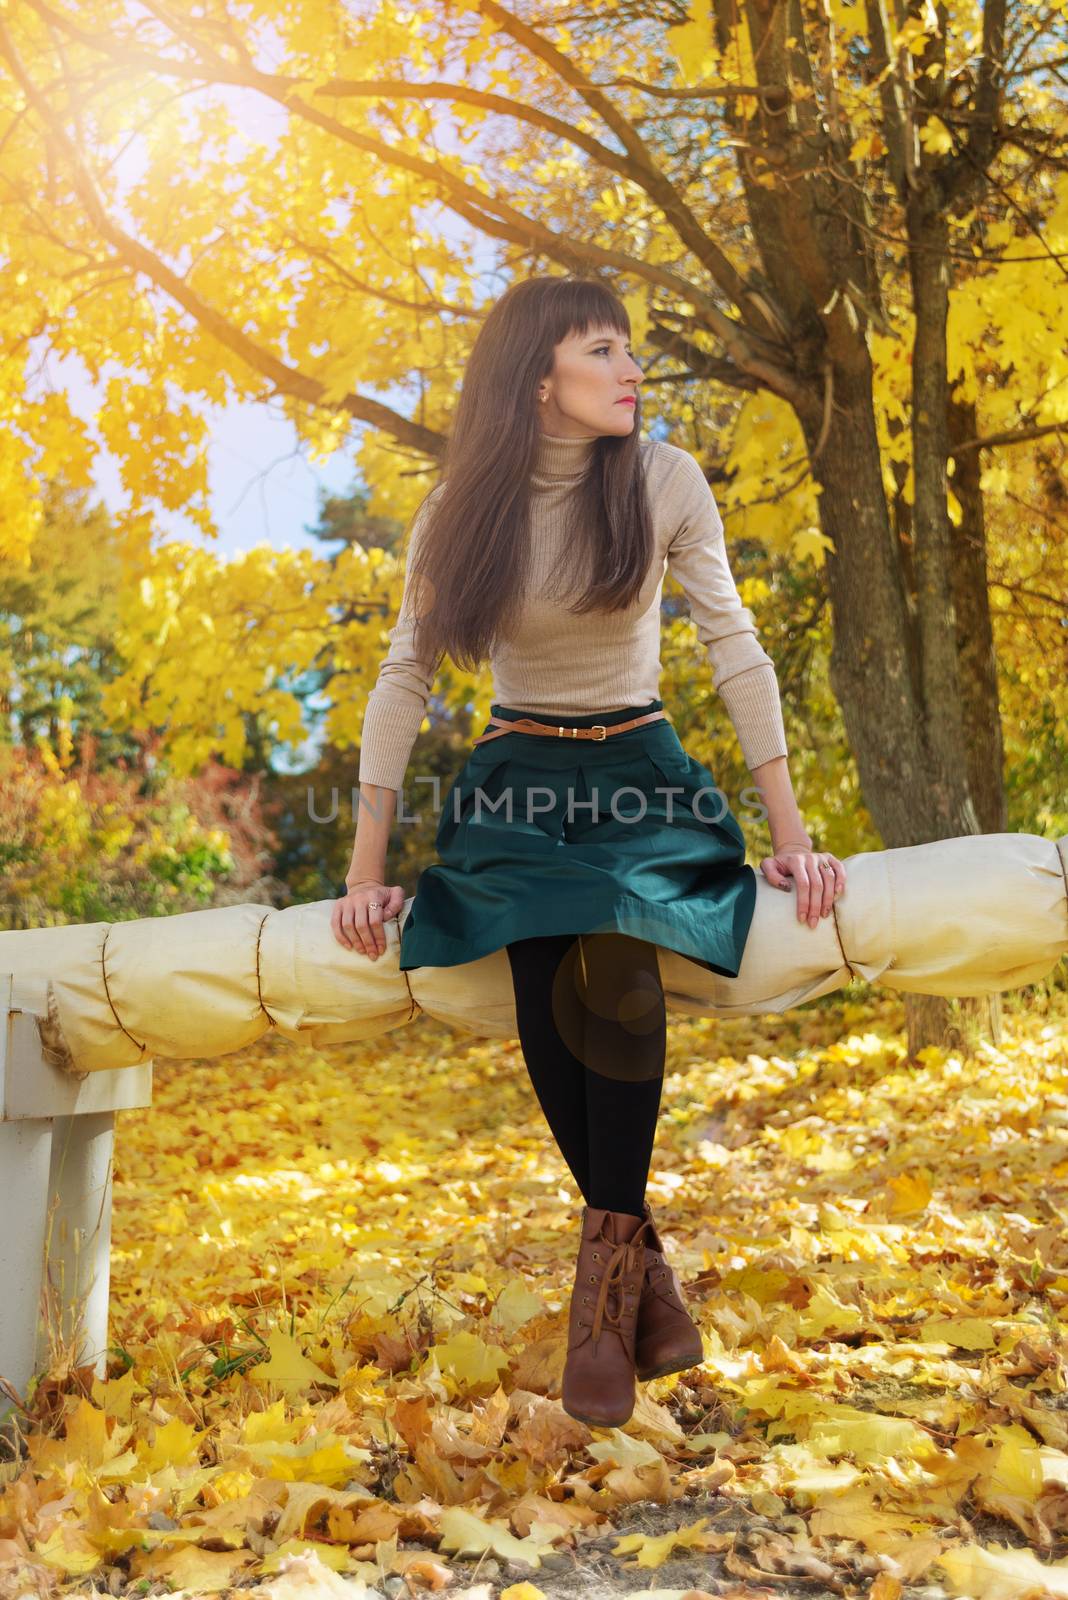 Brunette girl in autumn park by Epitavi